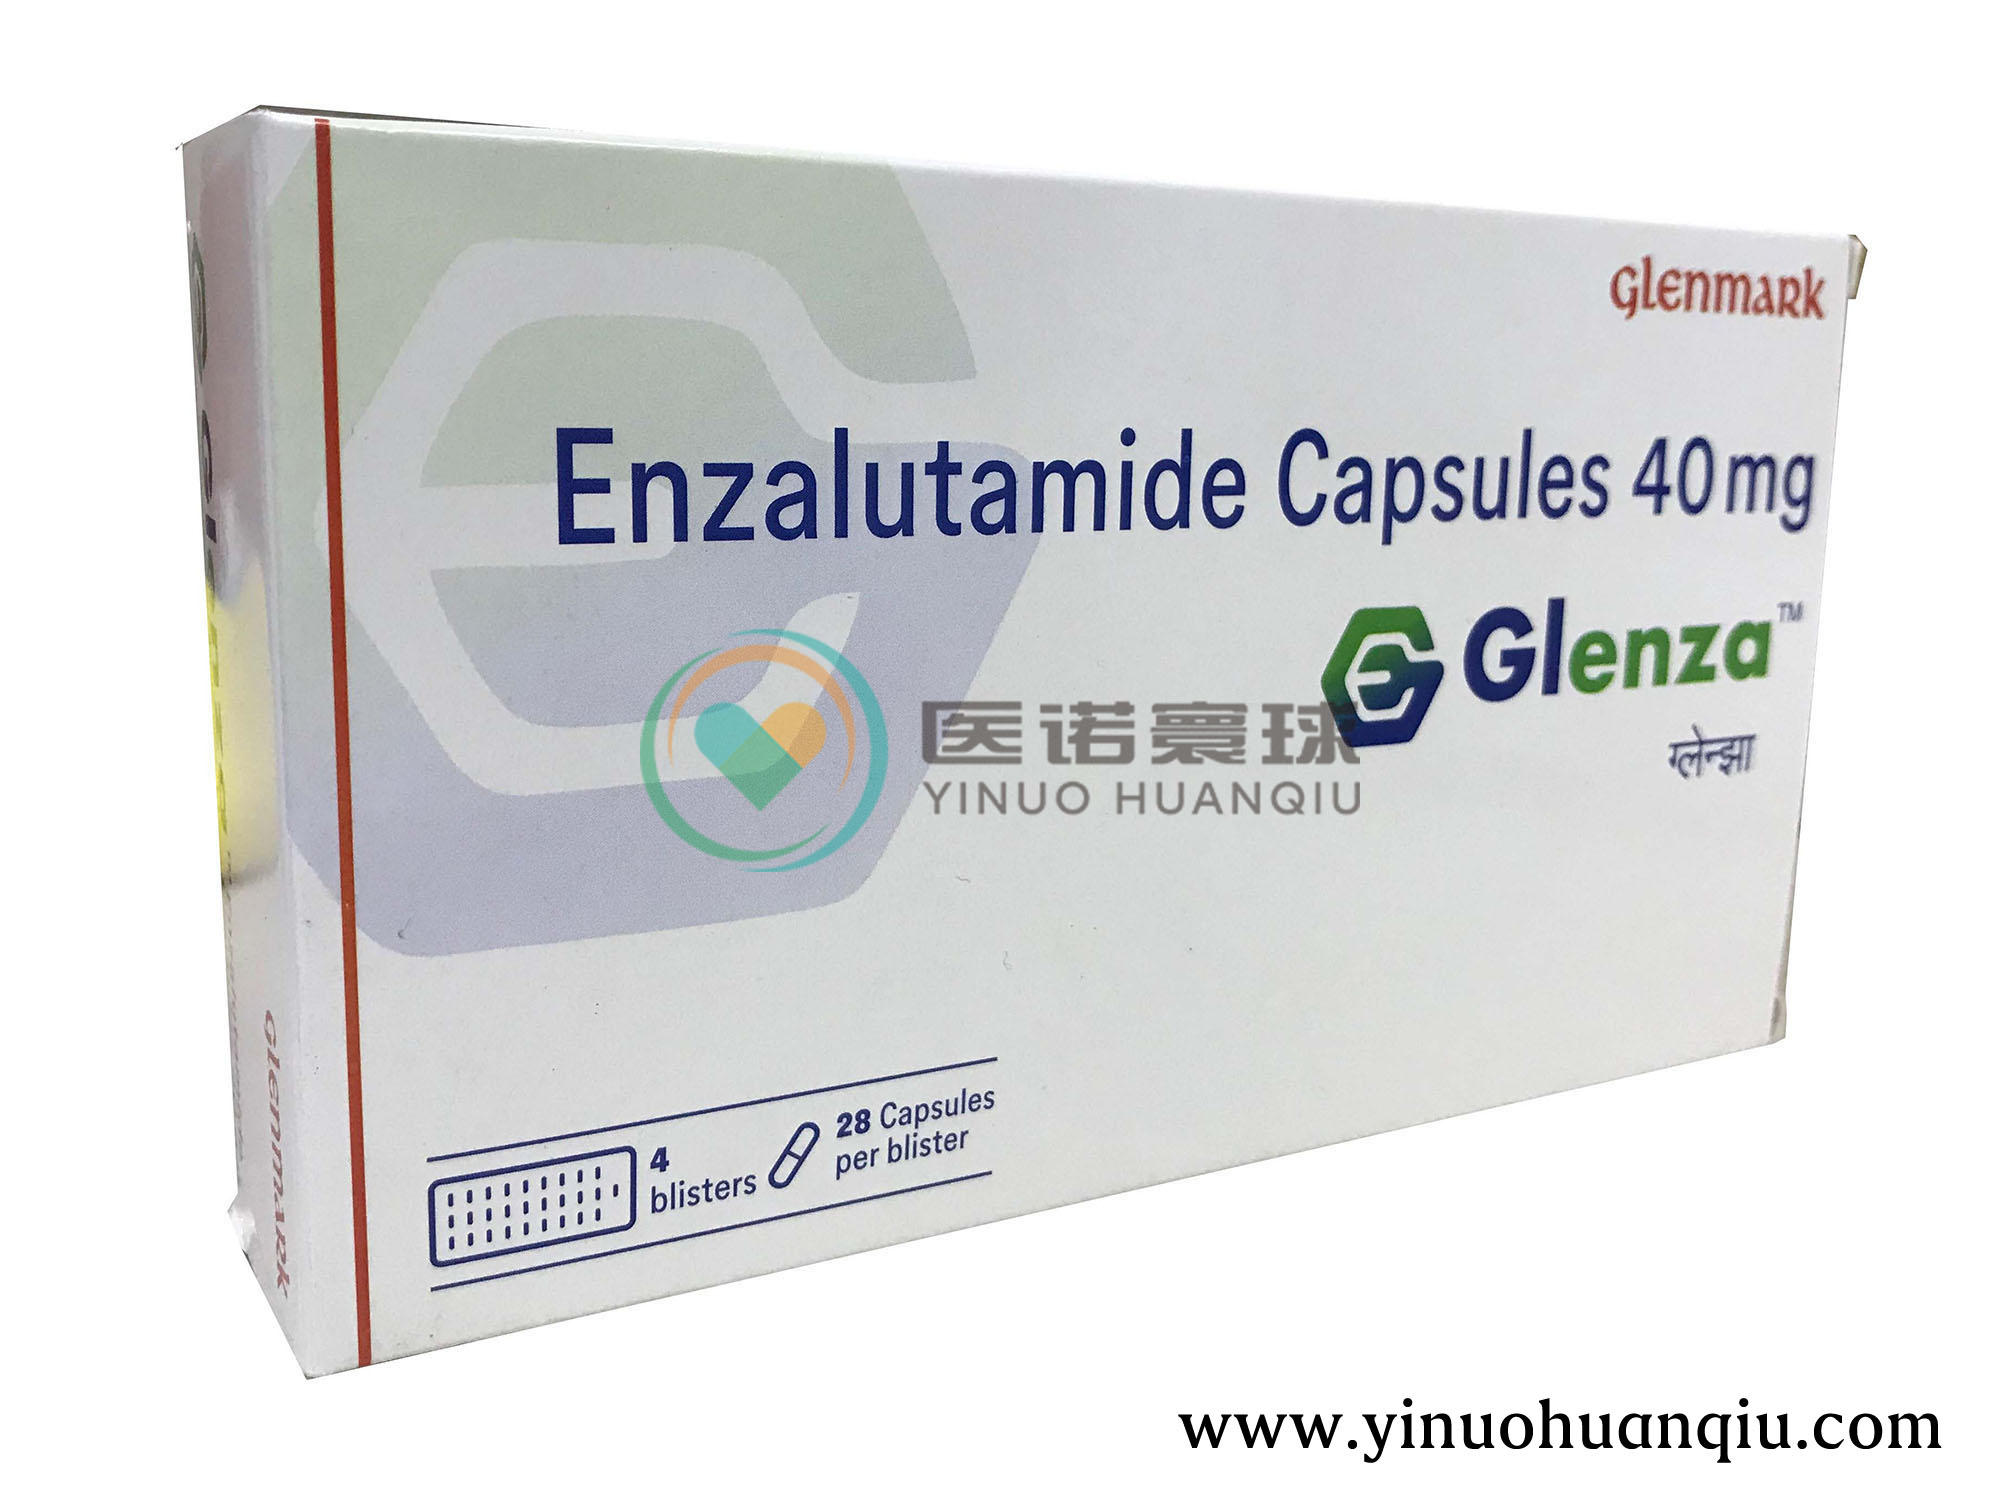 图注:印度glenmark药厂生产的恩杂鲁胺